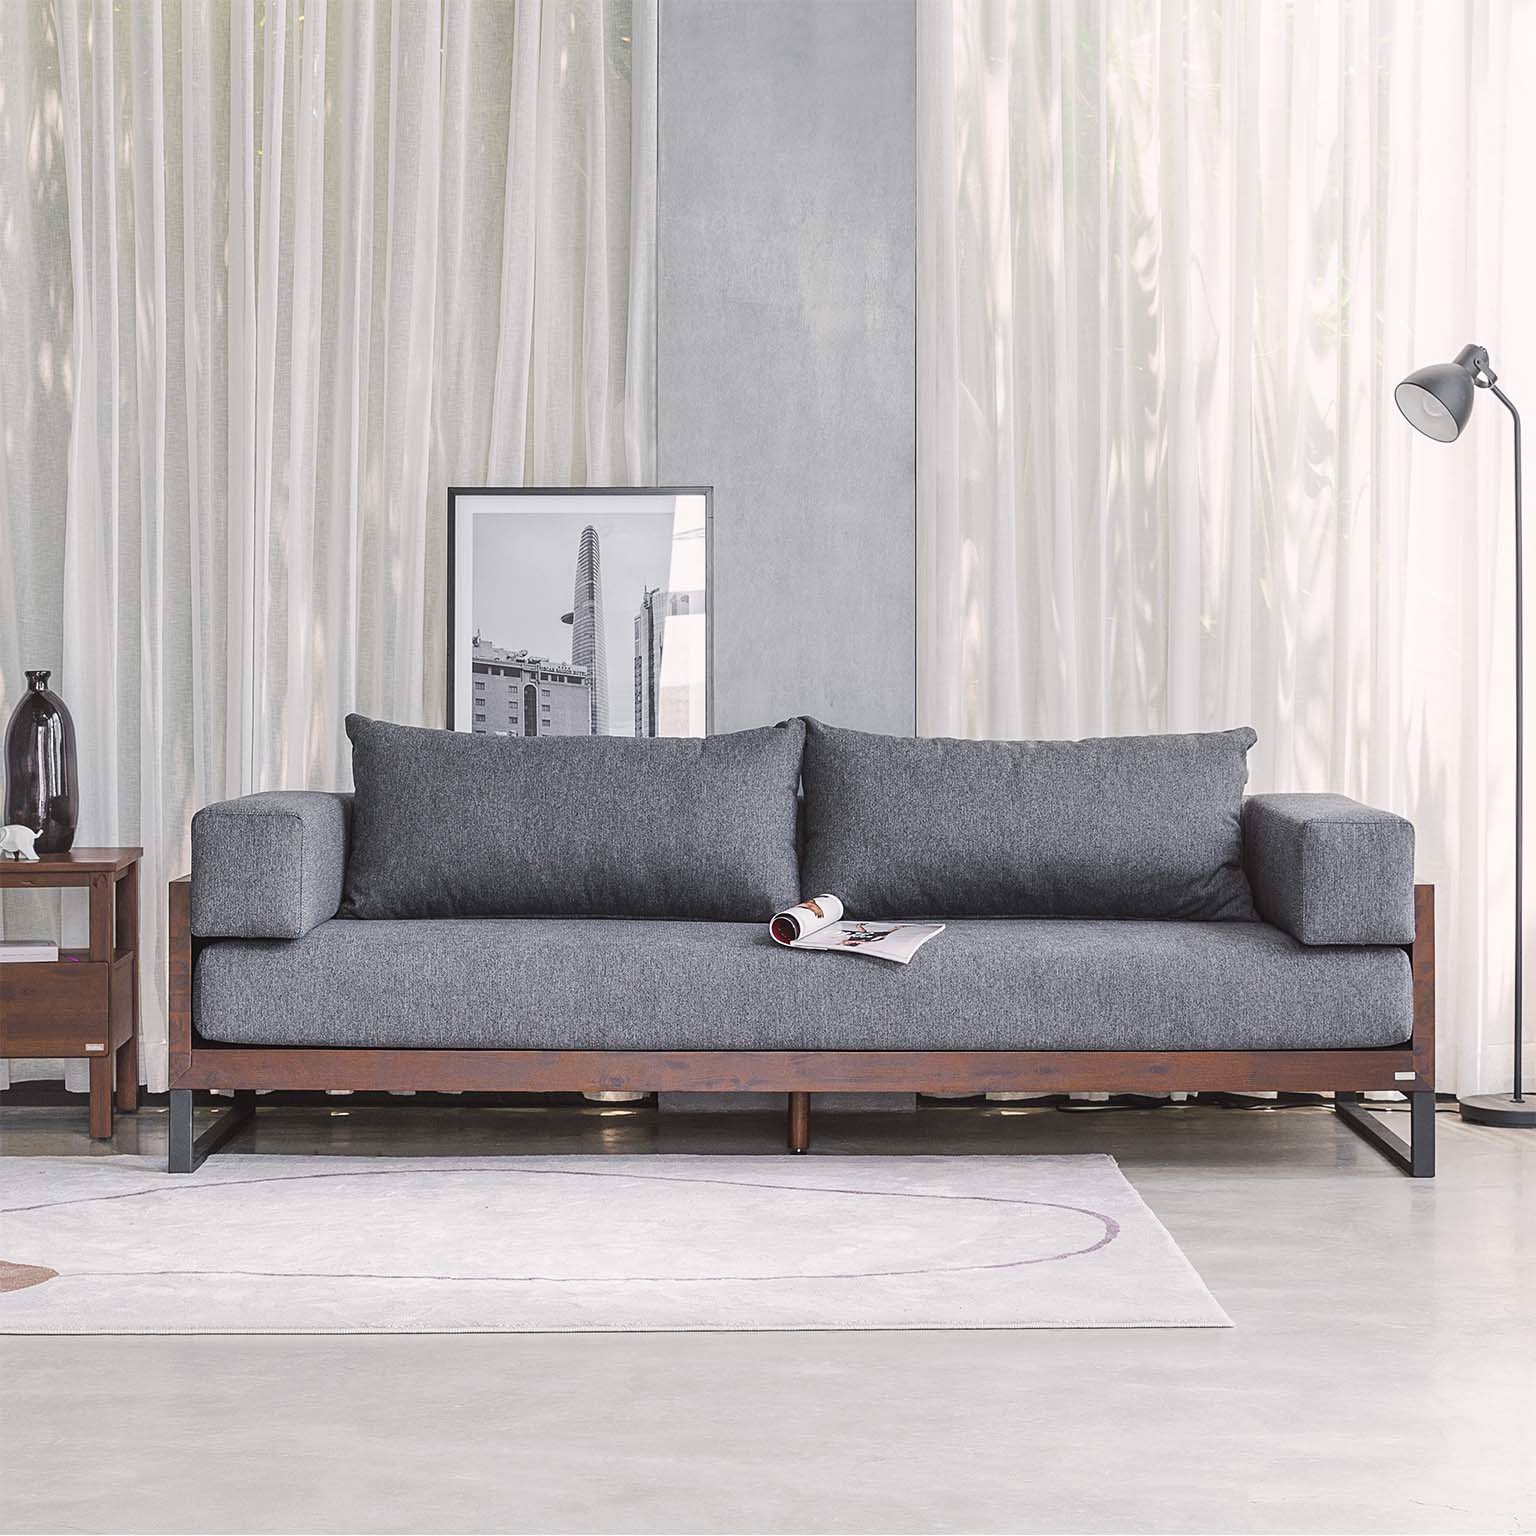 Sofa văng được là từ chất liệu gỗ tràm phủ sơn Pu - SPGVP01